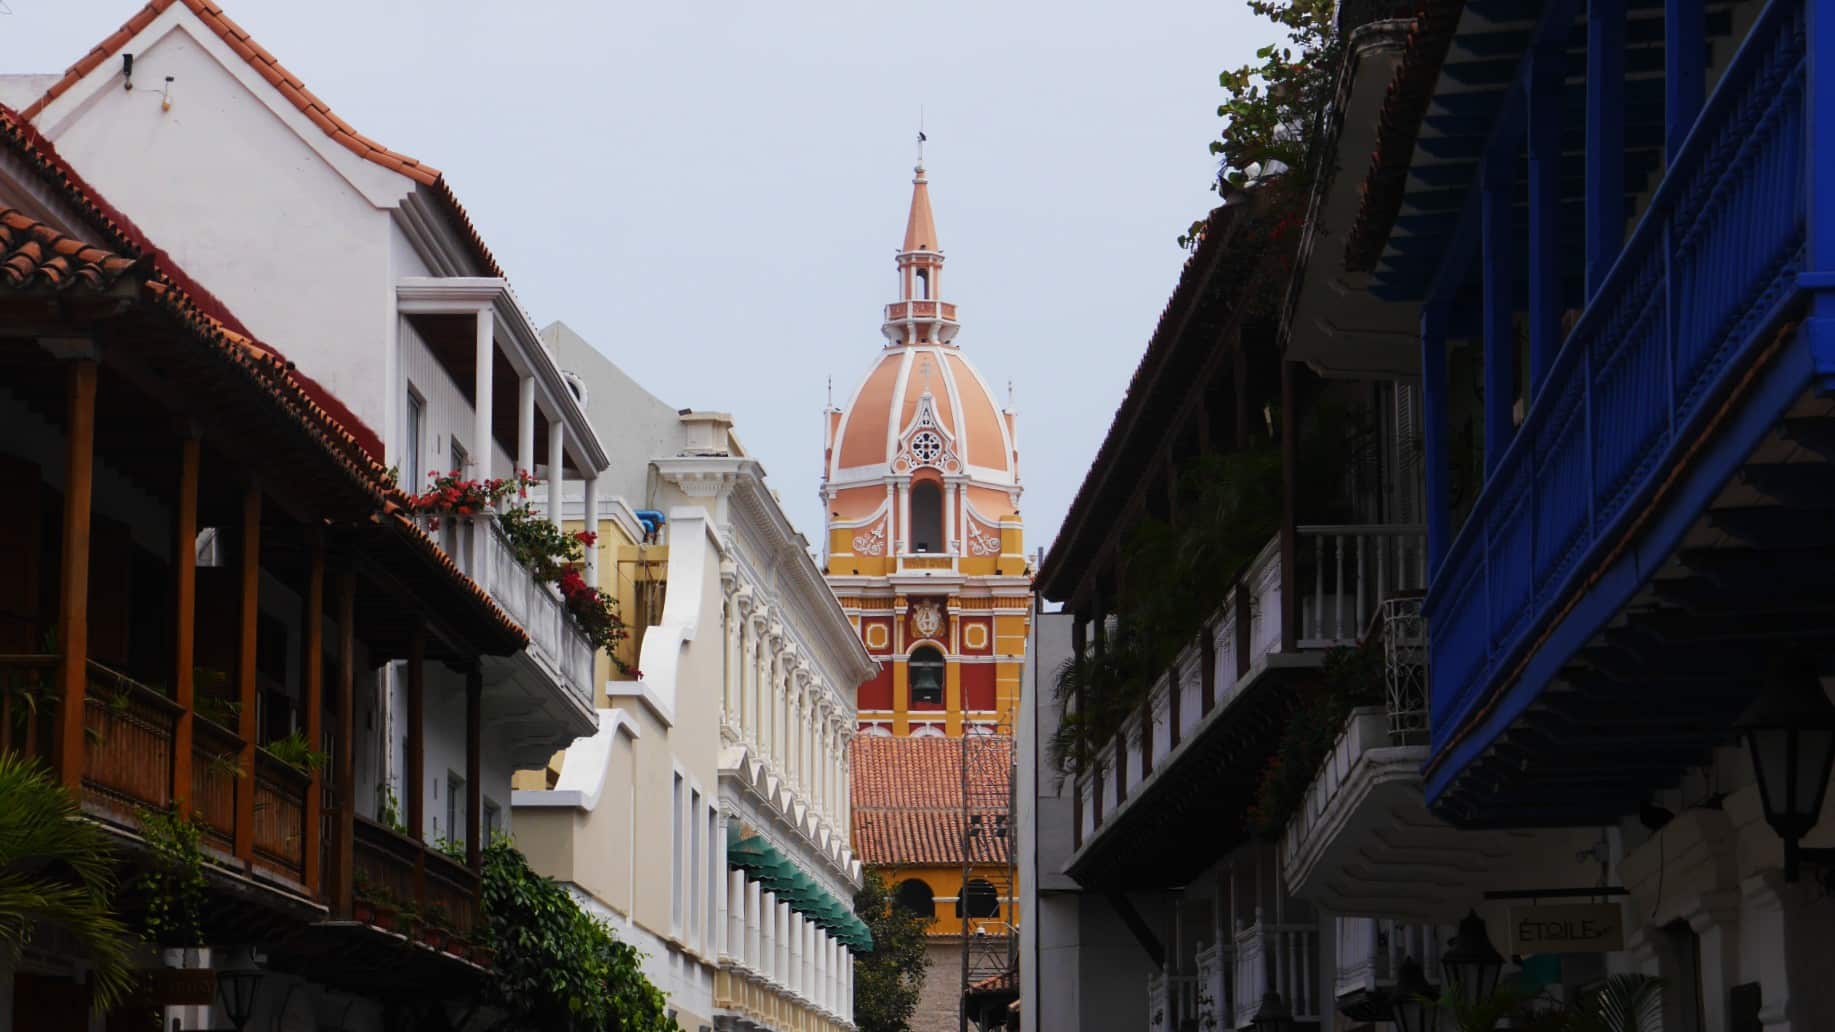 Considerado uno de los barrios históricos más hermosos de América, el distrito Centro de Cartagena está repleto de atracciones y encanto colonial.